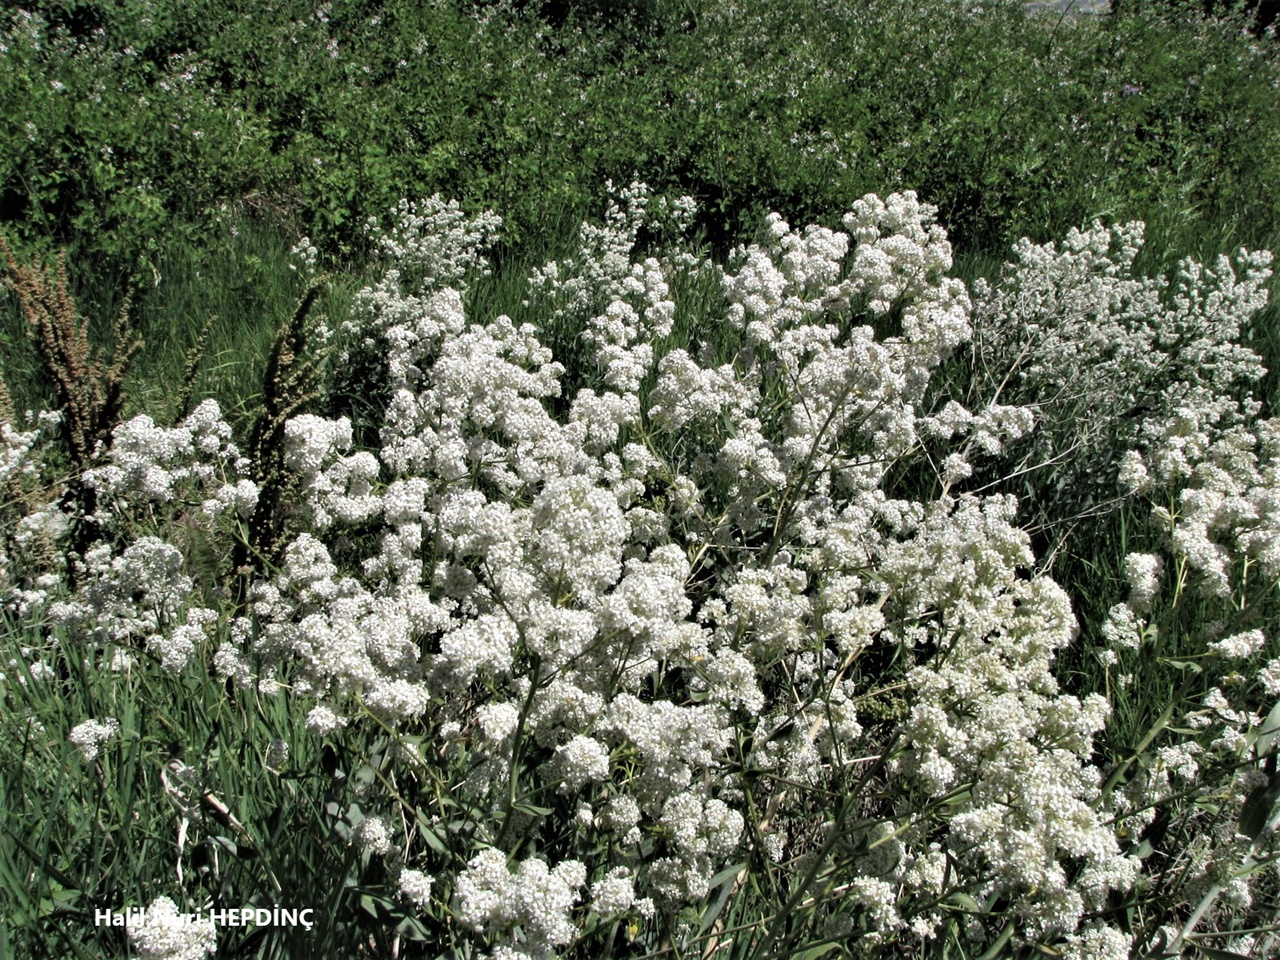 Nujdar (Lepidium latifolium)